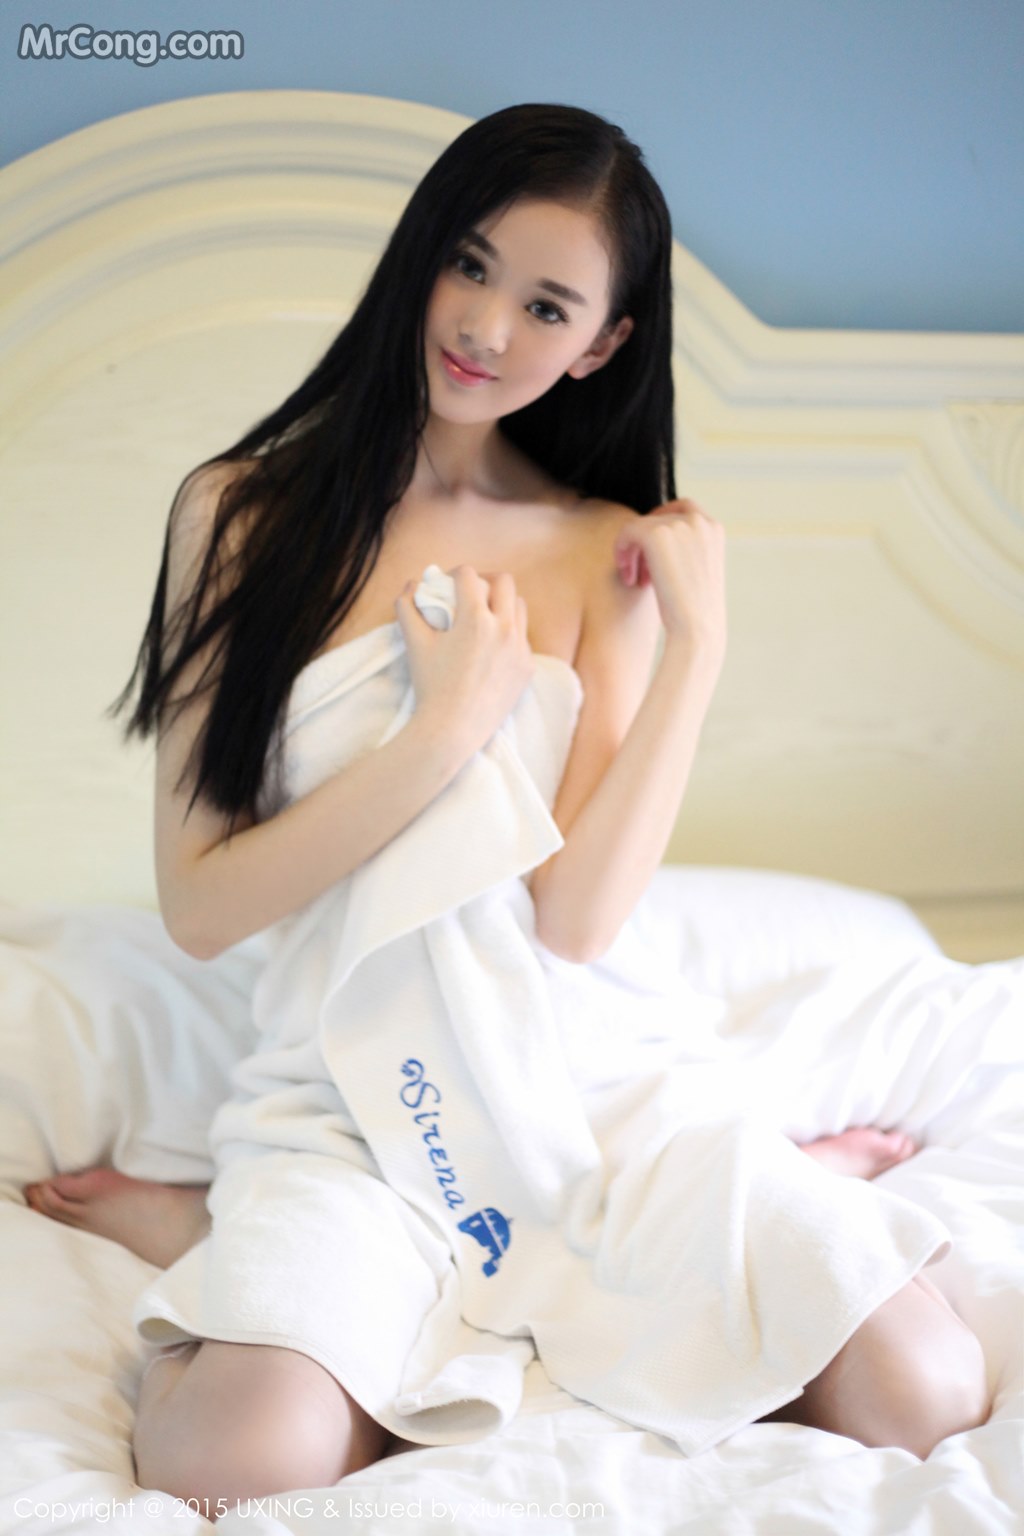 UXING Vol.029: Model Wen Xin Baby (温馨 baby) (50 photos)